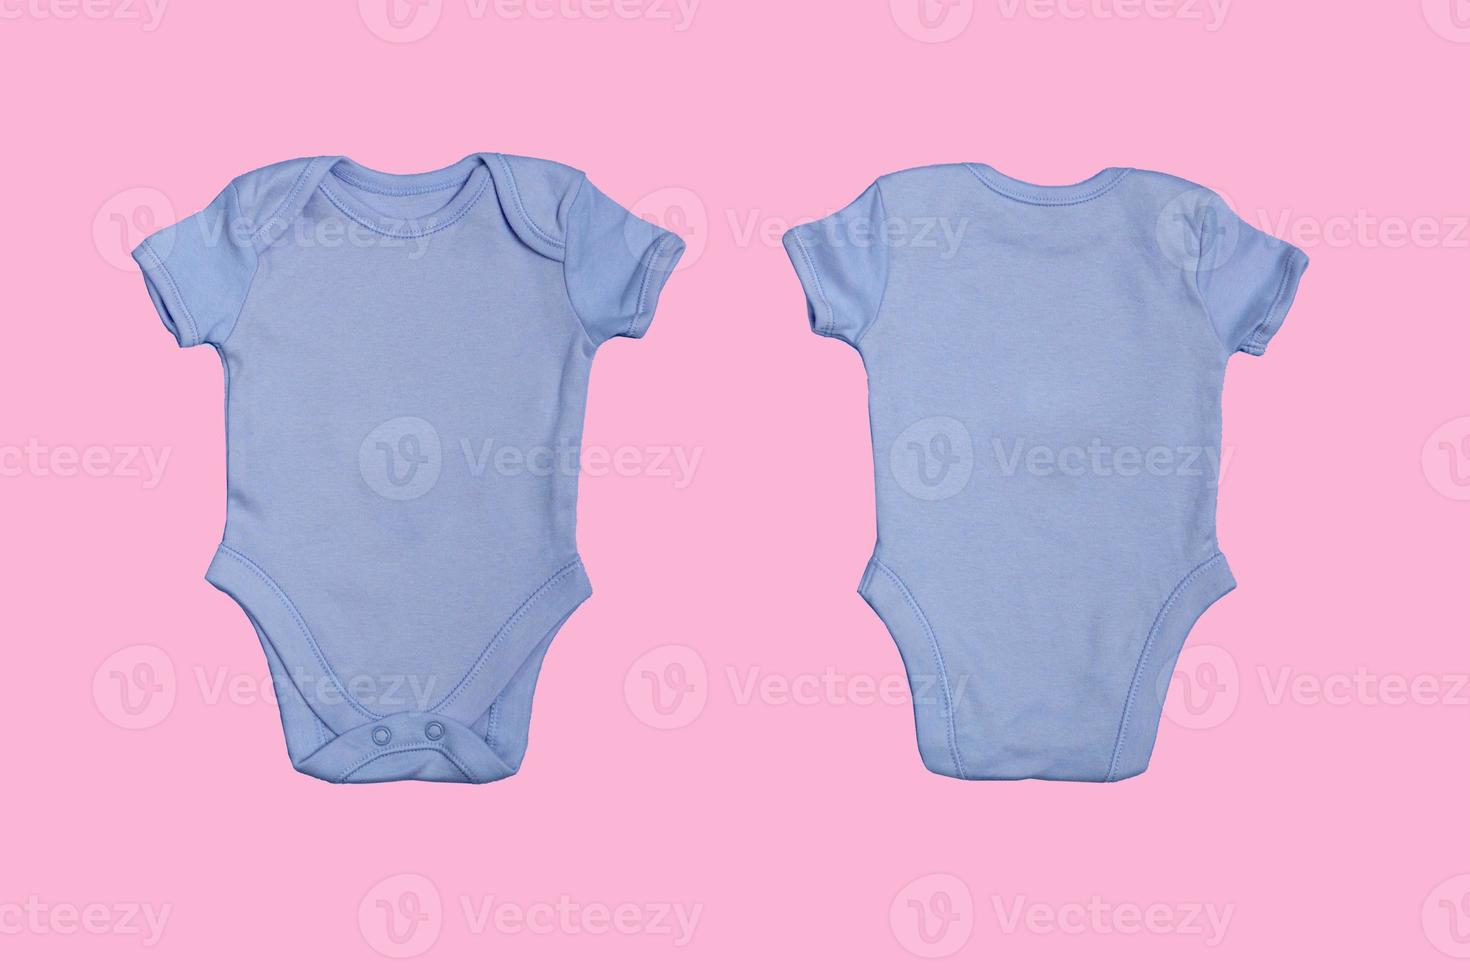 blauwe lege baby Romper sjabloon, close-up mockup op roze achtergrond. voor- en achterkant. baby bodysuit, jumpsuit voor pasgeborenen. uitzicht van boven foto